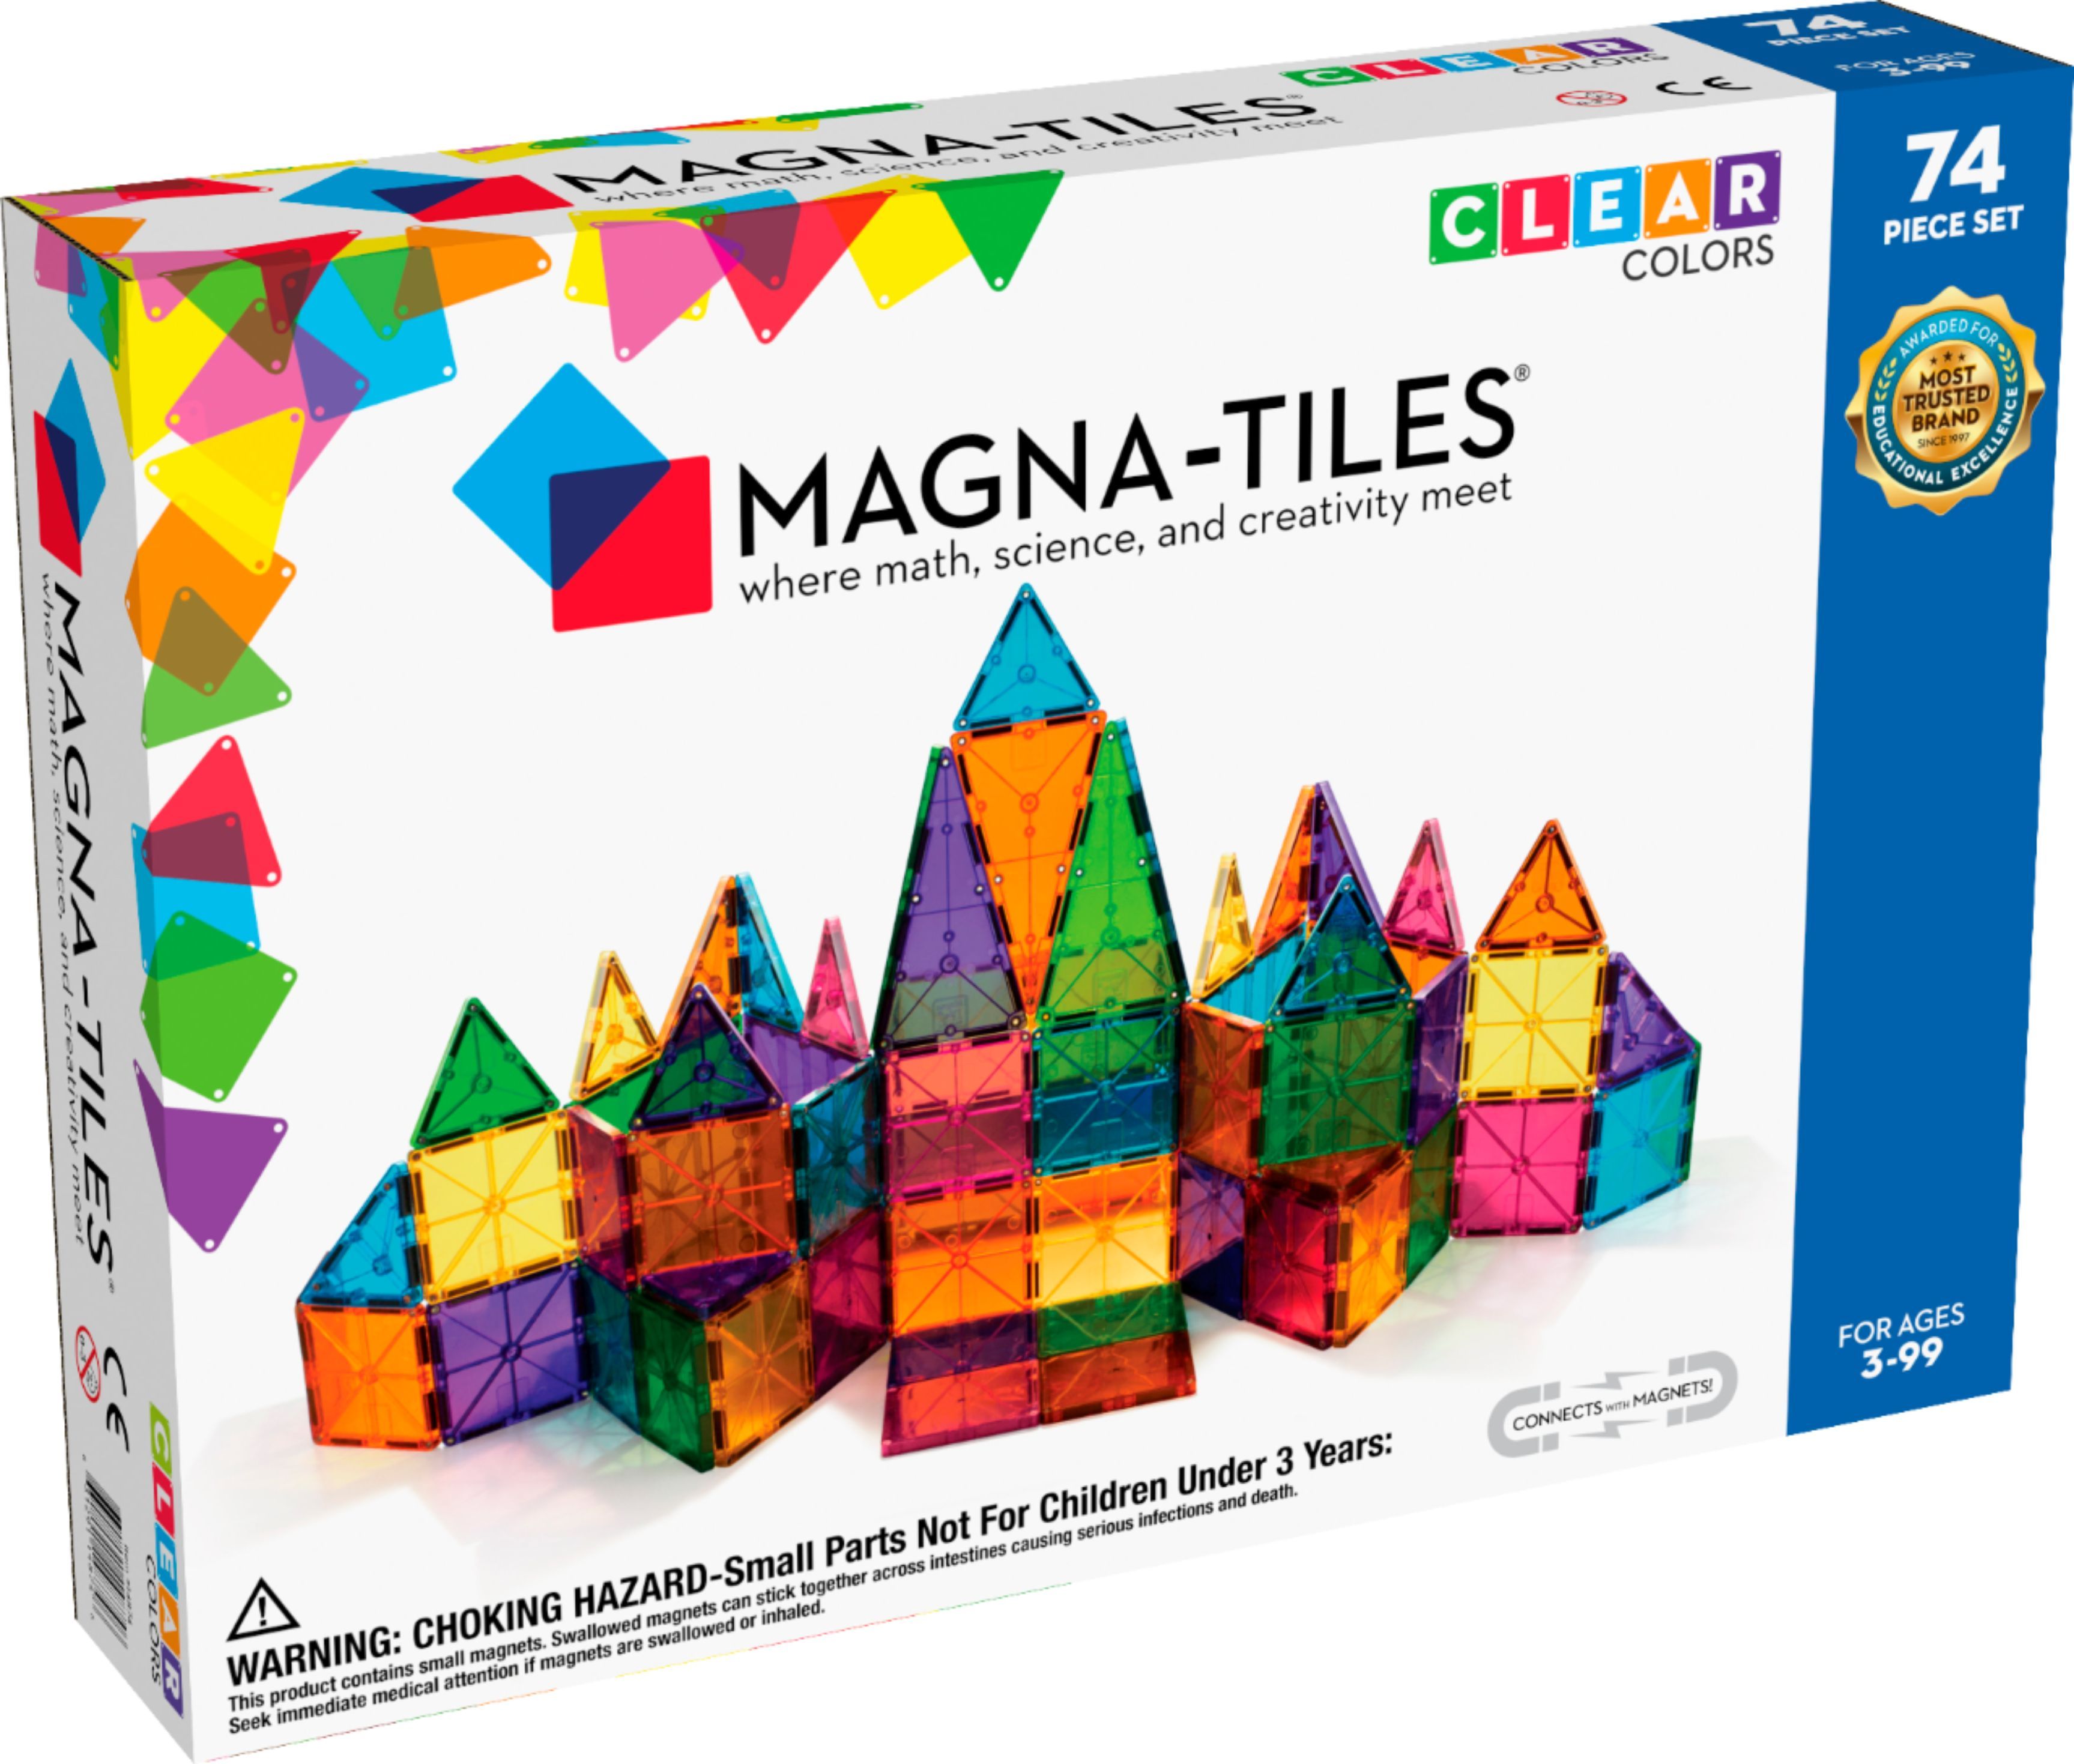 Magna-Tiles Clear Colors 74-Piece Set 14874 - Best Buy | Best Buy U.S.